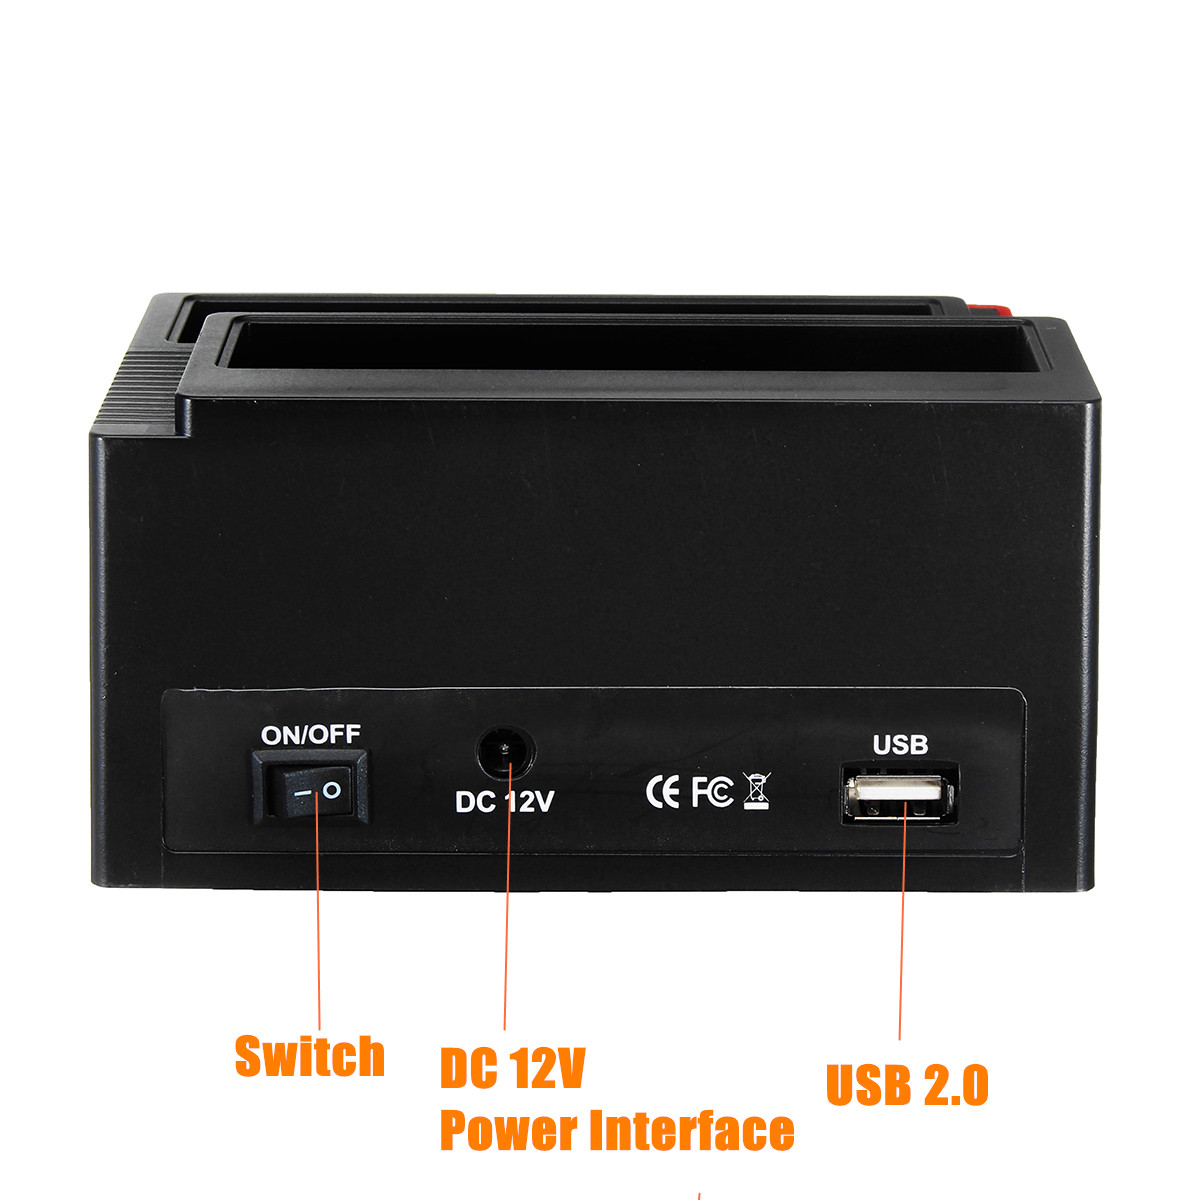 2535quot-SATA-IDE-HDD-Docking-Station-Clone-Backup-Hard-Drive-Enclosure-USB20-HUB-Card-Reader-EU-1345958